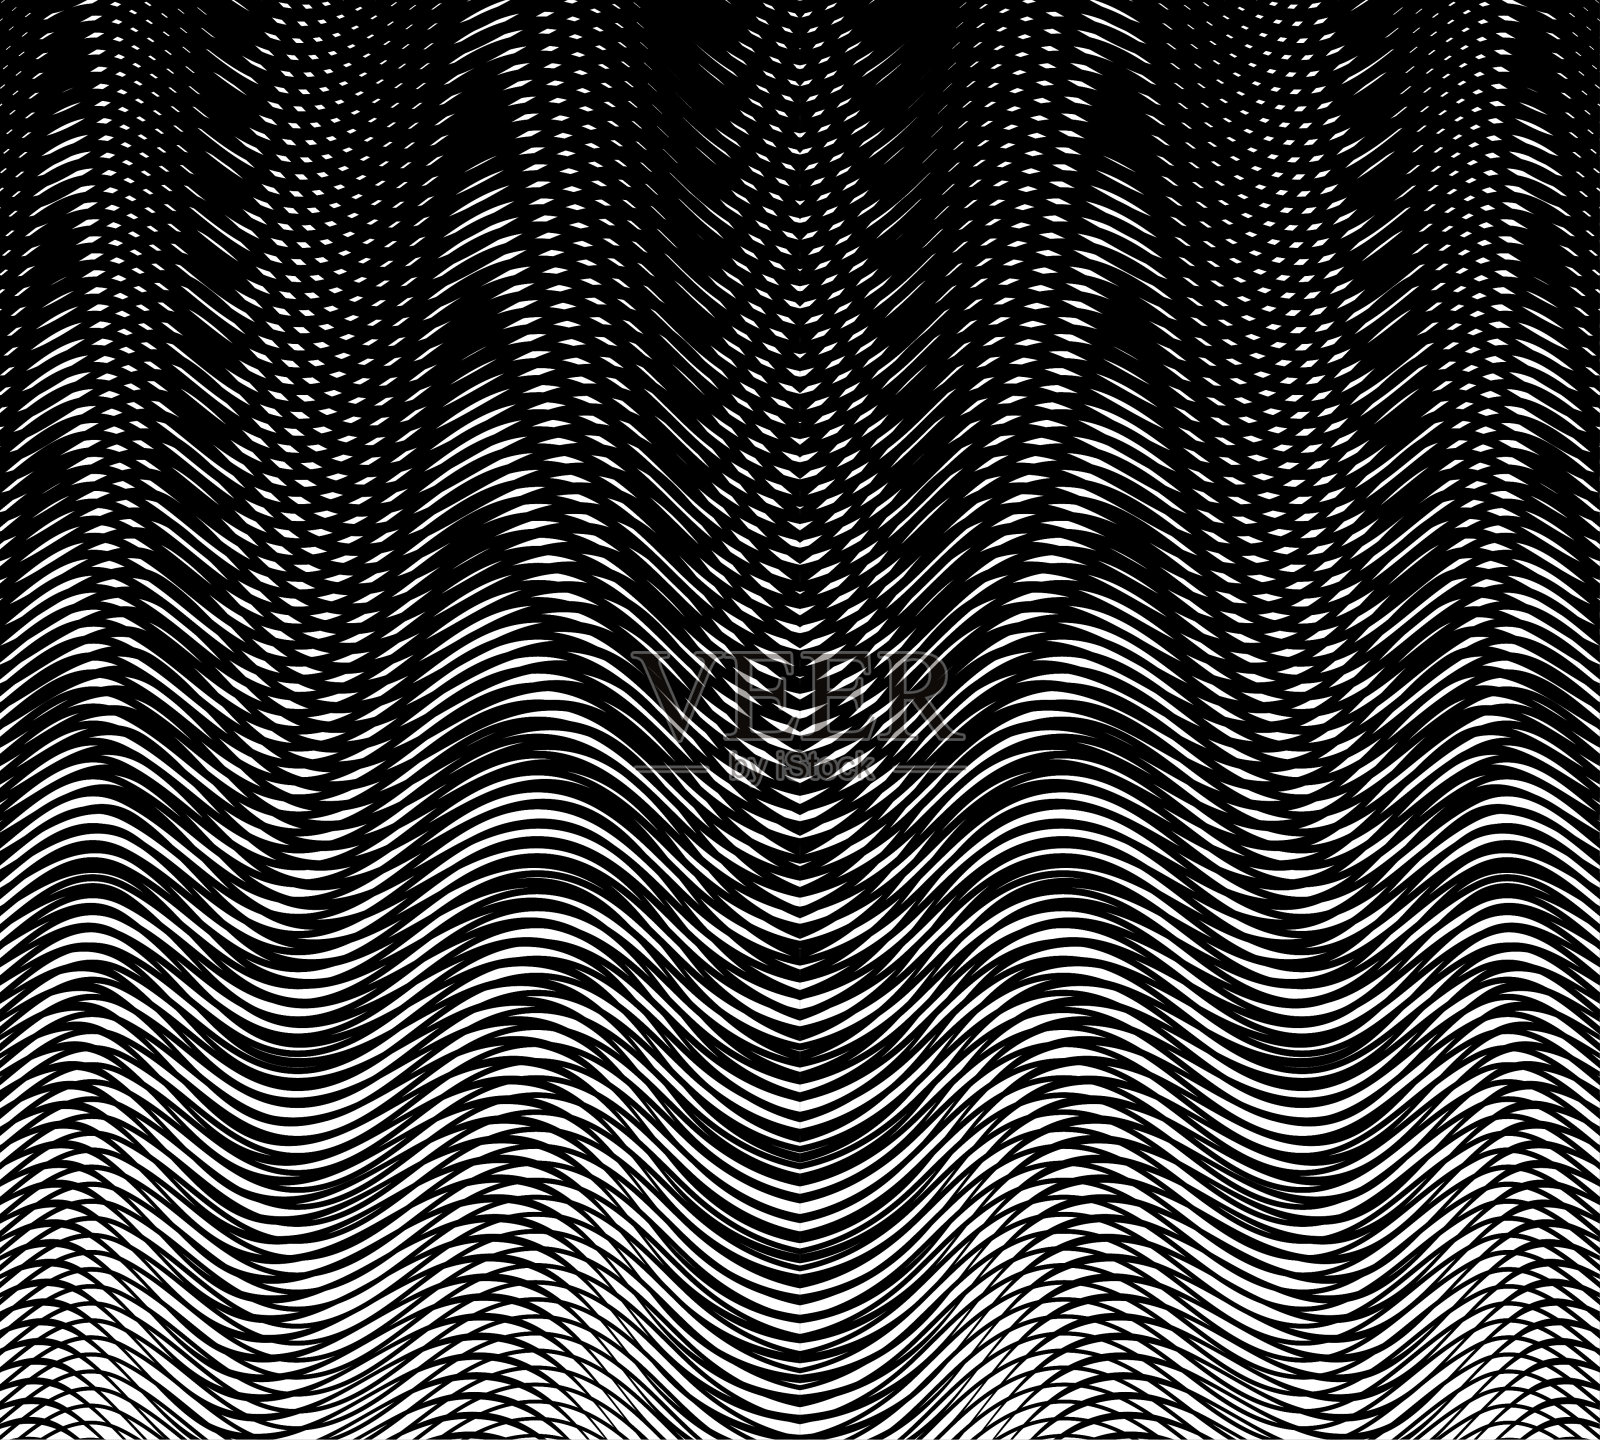 抽象的流体纹理背景与波浪线性云纹效果插画图片素材